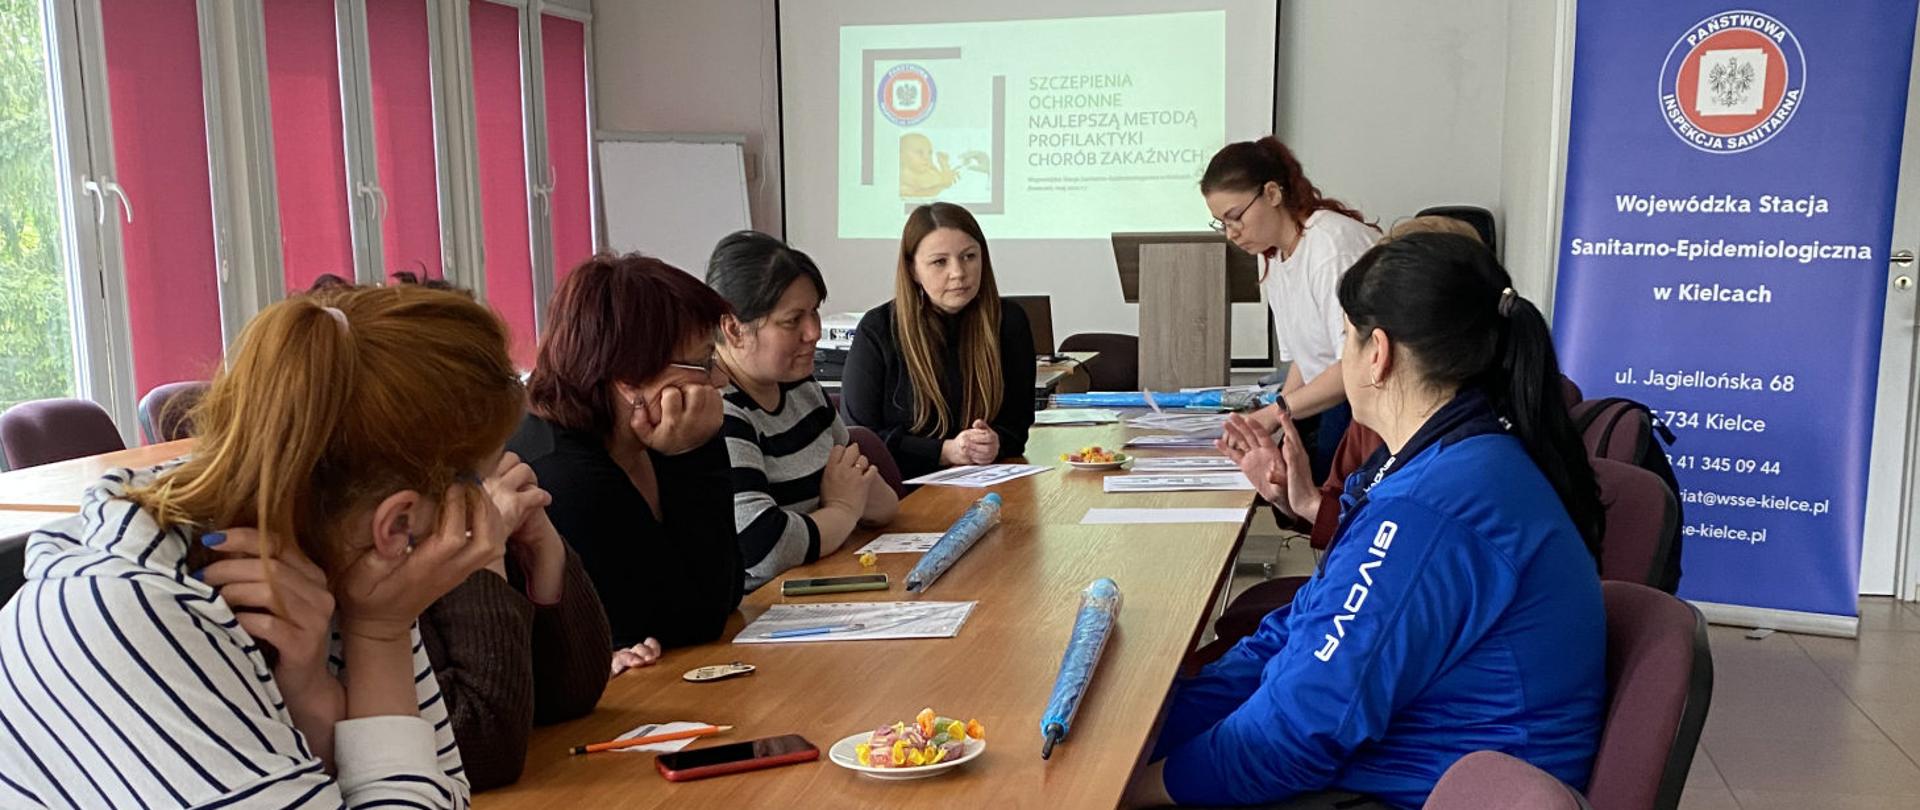 Akcja informacyjna promująca szczepienia ochronne wśród uchodźców z Ukrainy